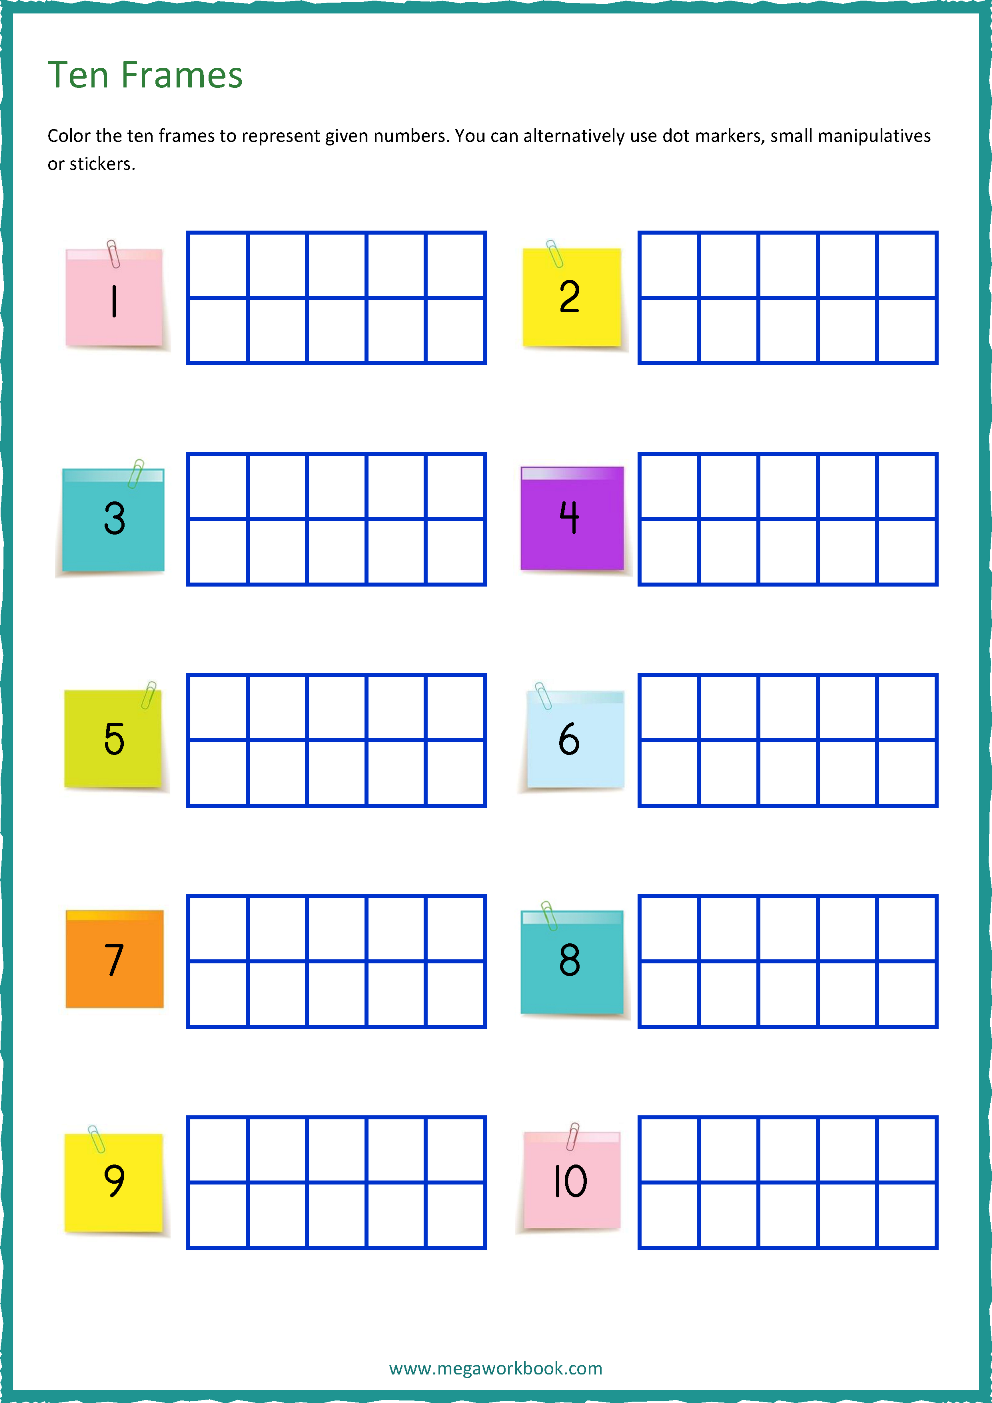 Ten Frame Worksheets Ten Frames 10 Frames Counting Addition Subtraction Even Odd Number Relationships Etc Megaworkbook